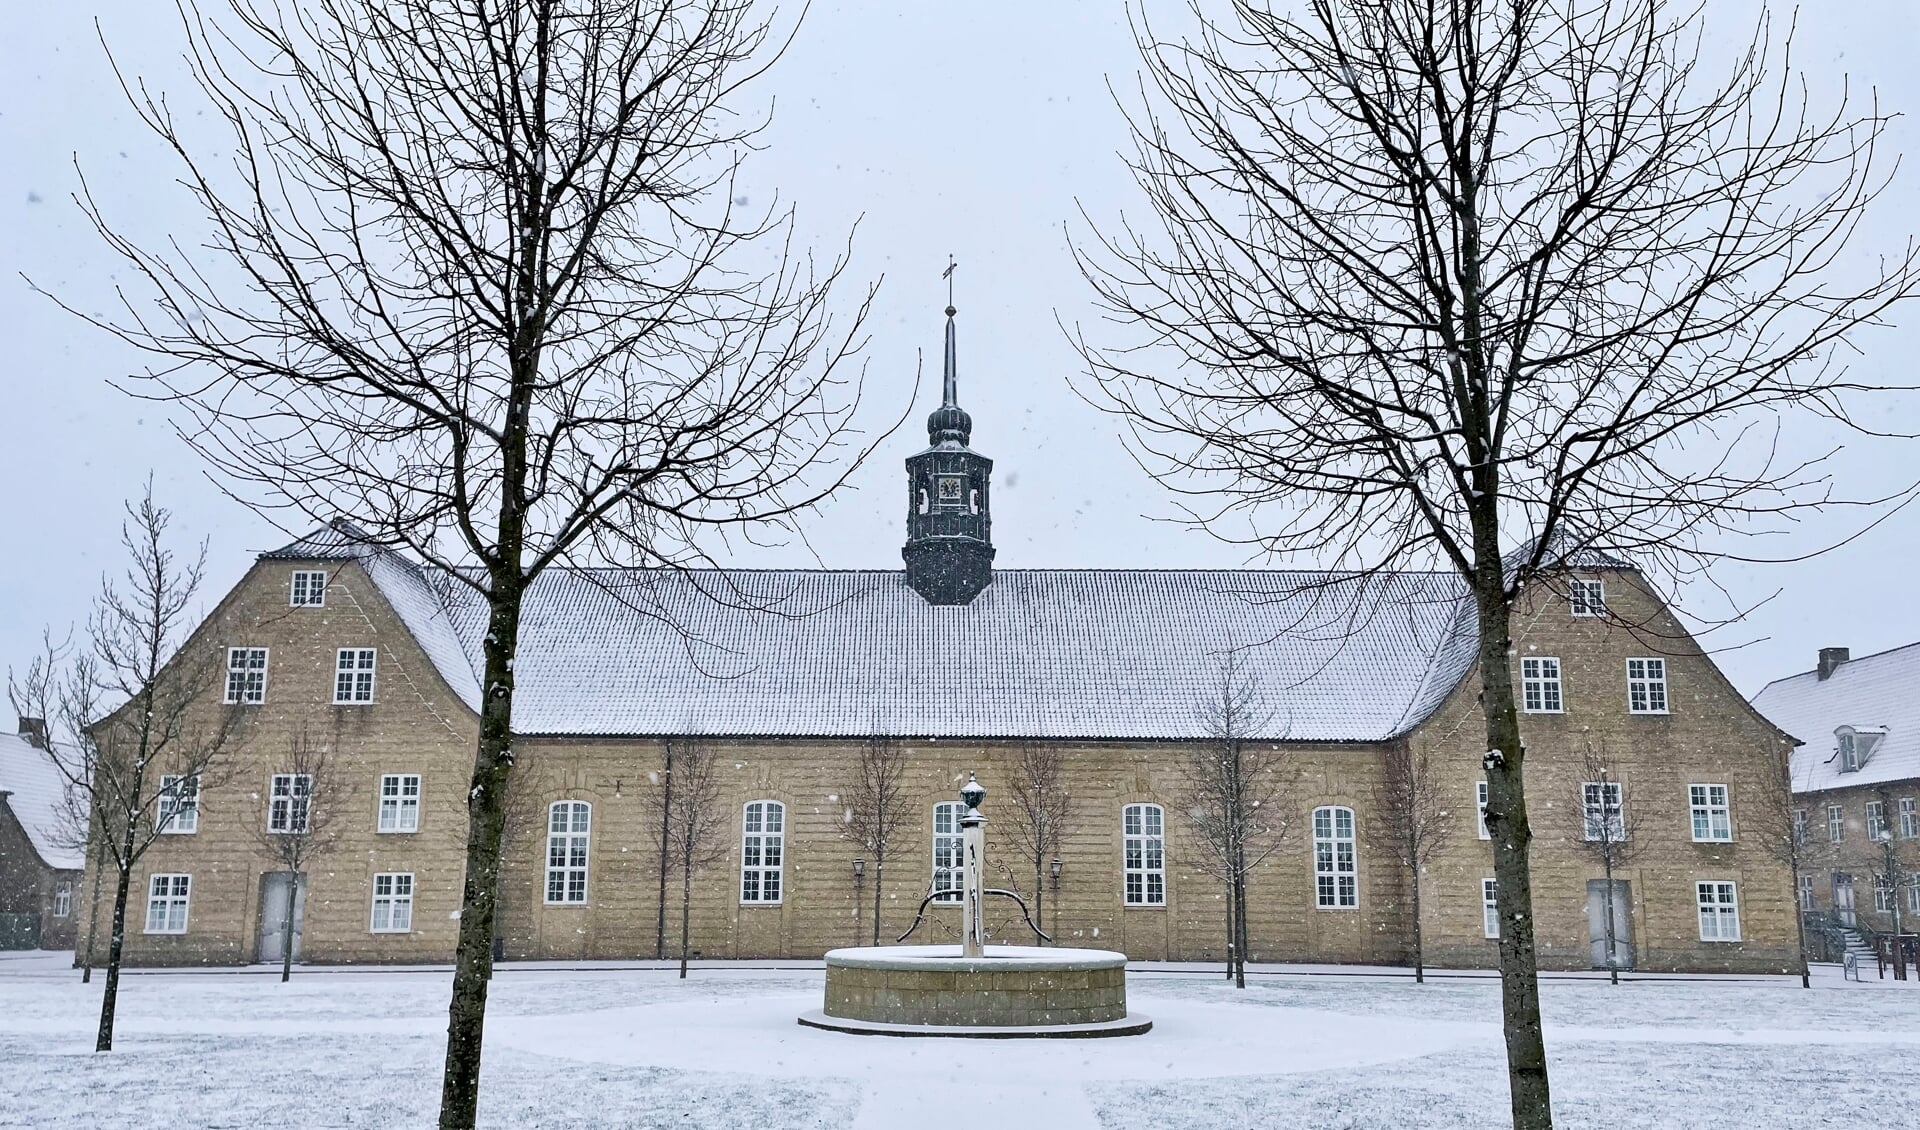 I 1771 blev Brødremenigheden i Herrnhut i Sachsen inviteret til at anlægge menighedsbyen Christiansfeld i Sønderjylland. Fra 1773 blev byen bygget ud fra samme byplan som andre europæiske brødrebyer. De herrnhutiske brødre var kendte for deres handels- og håndværksmæssige kundskaber. Brødremenigheden i Christiansfeld eksisterer fortsat som et evangelisk-luthersk kirkesamfund. Det er i dette miljø, at en stor del af romanen »De utilpassede« udspiller sig. Foto: